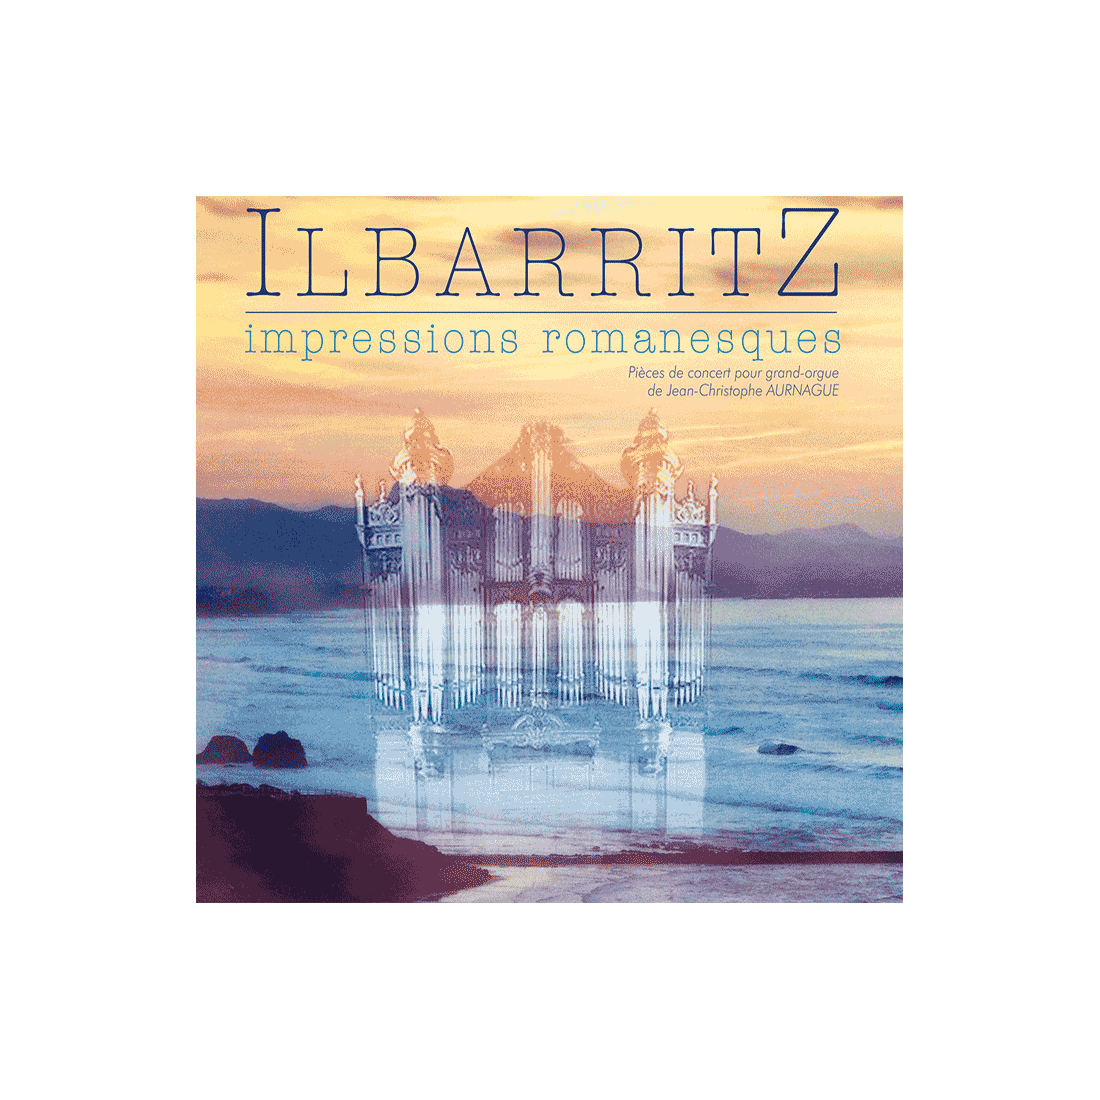 ILBARRITZ impressions romanesques - Pièces de concert pour grand-orgue de Jean-Christophe Aurnague